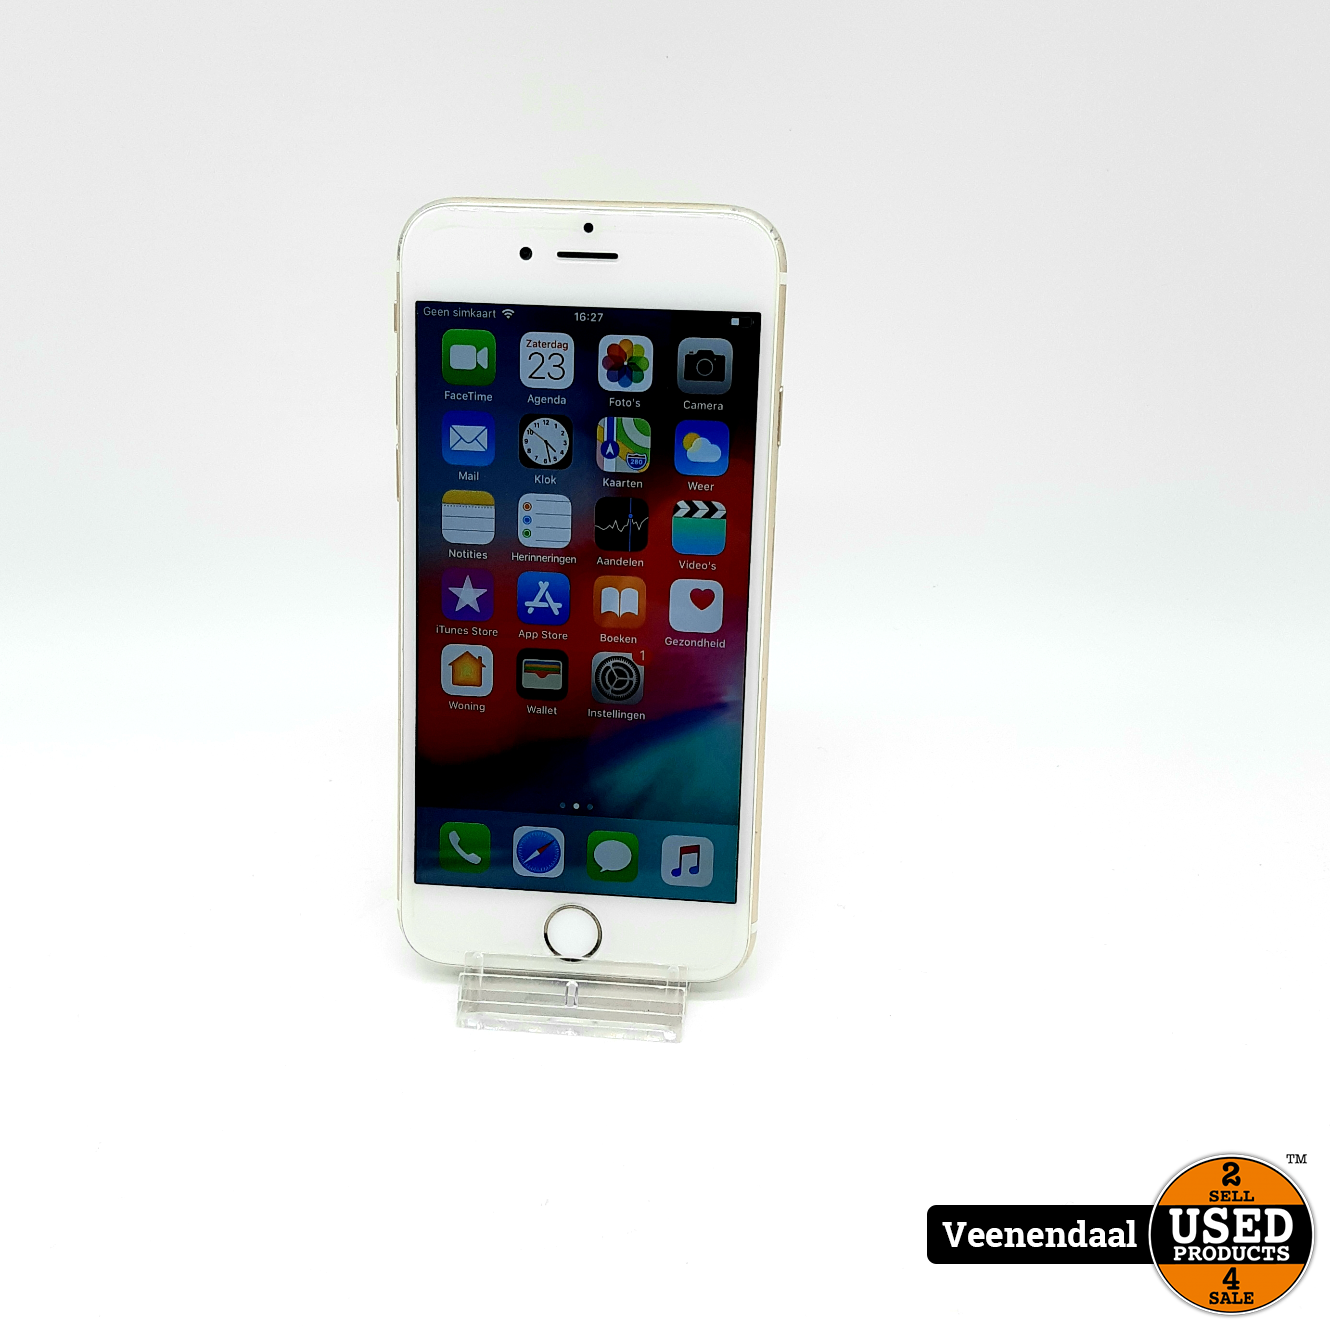 Afwijzen vochtigheid eigendom Apple iPhone 6 16GB Gold Accu: 89% - In Goede Staat - Used Products  Veenendaal